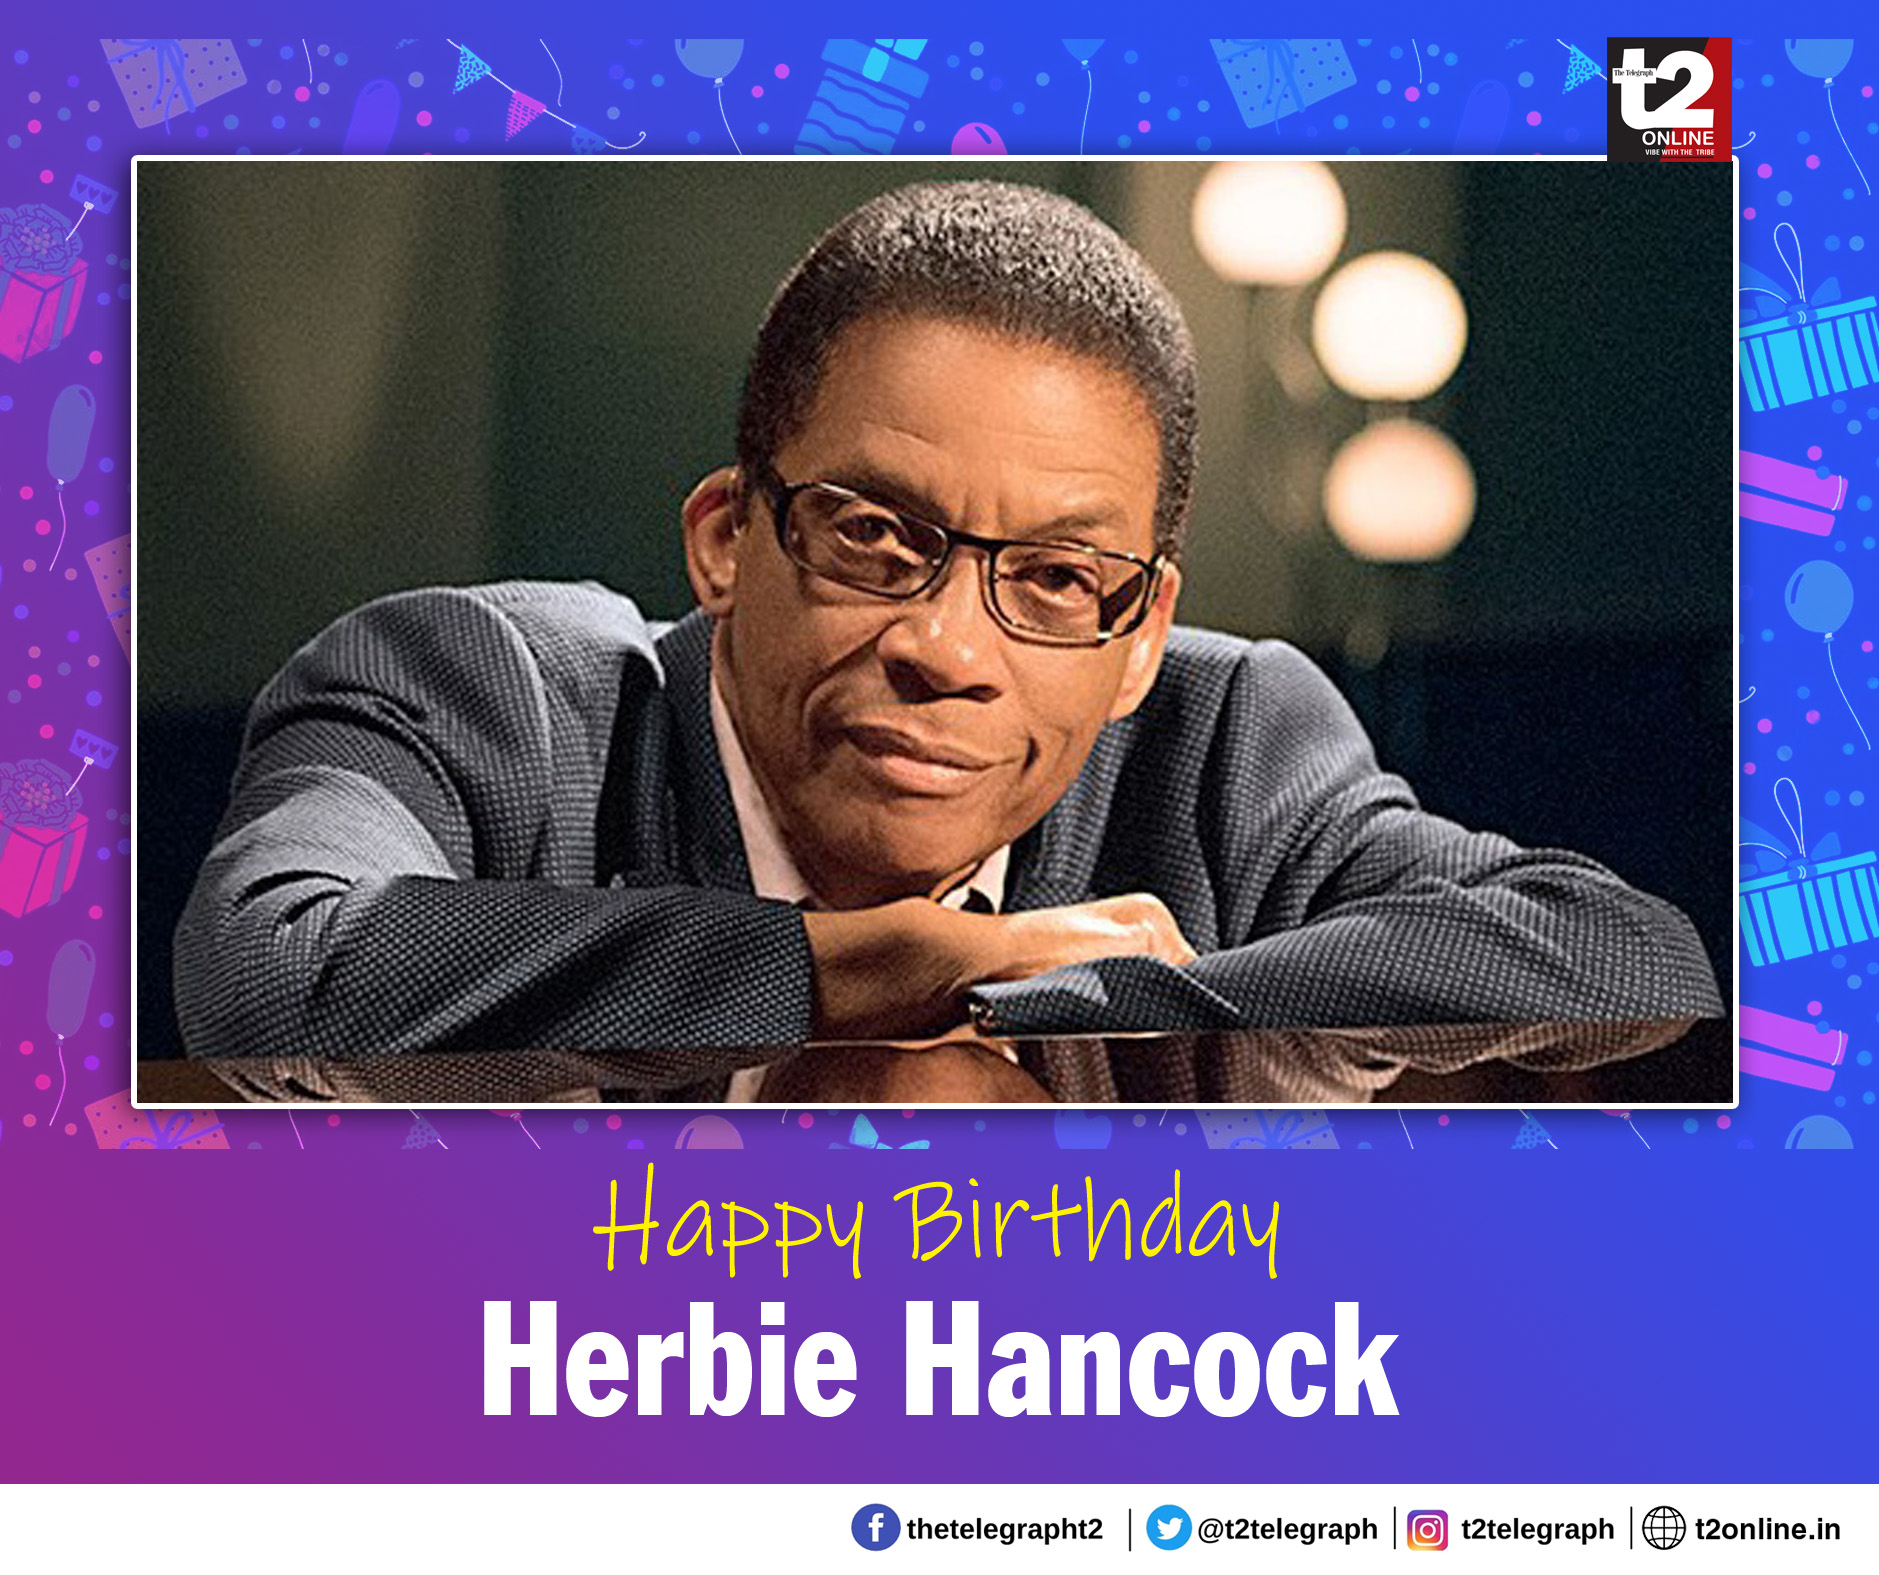 Happy birthday to the jazz giant, Herbie Hancock. 